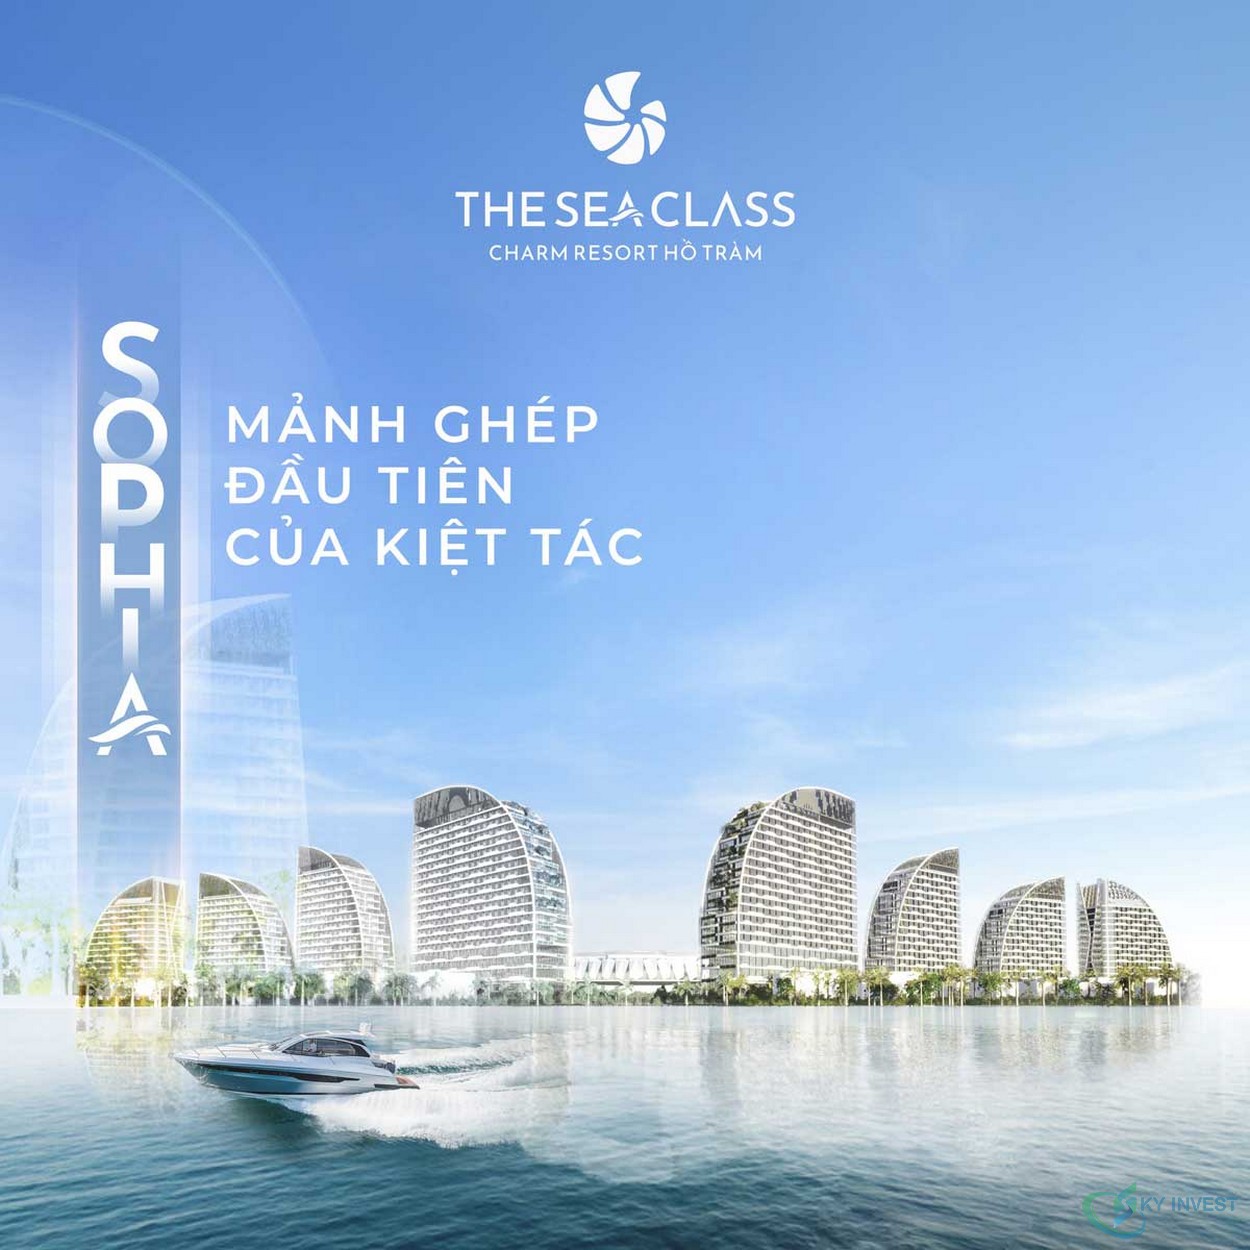 Tổng thể phân khu The Sea Class - Charm Resort Hồ Tràm